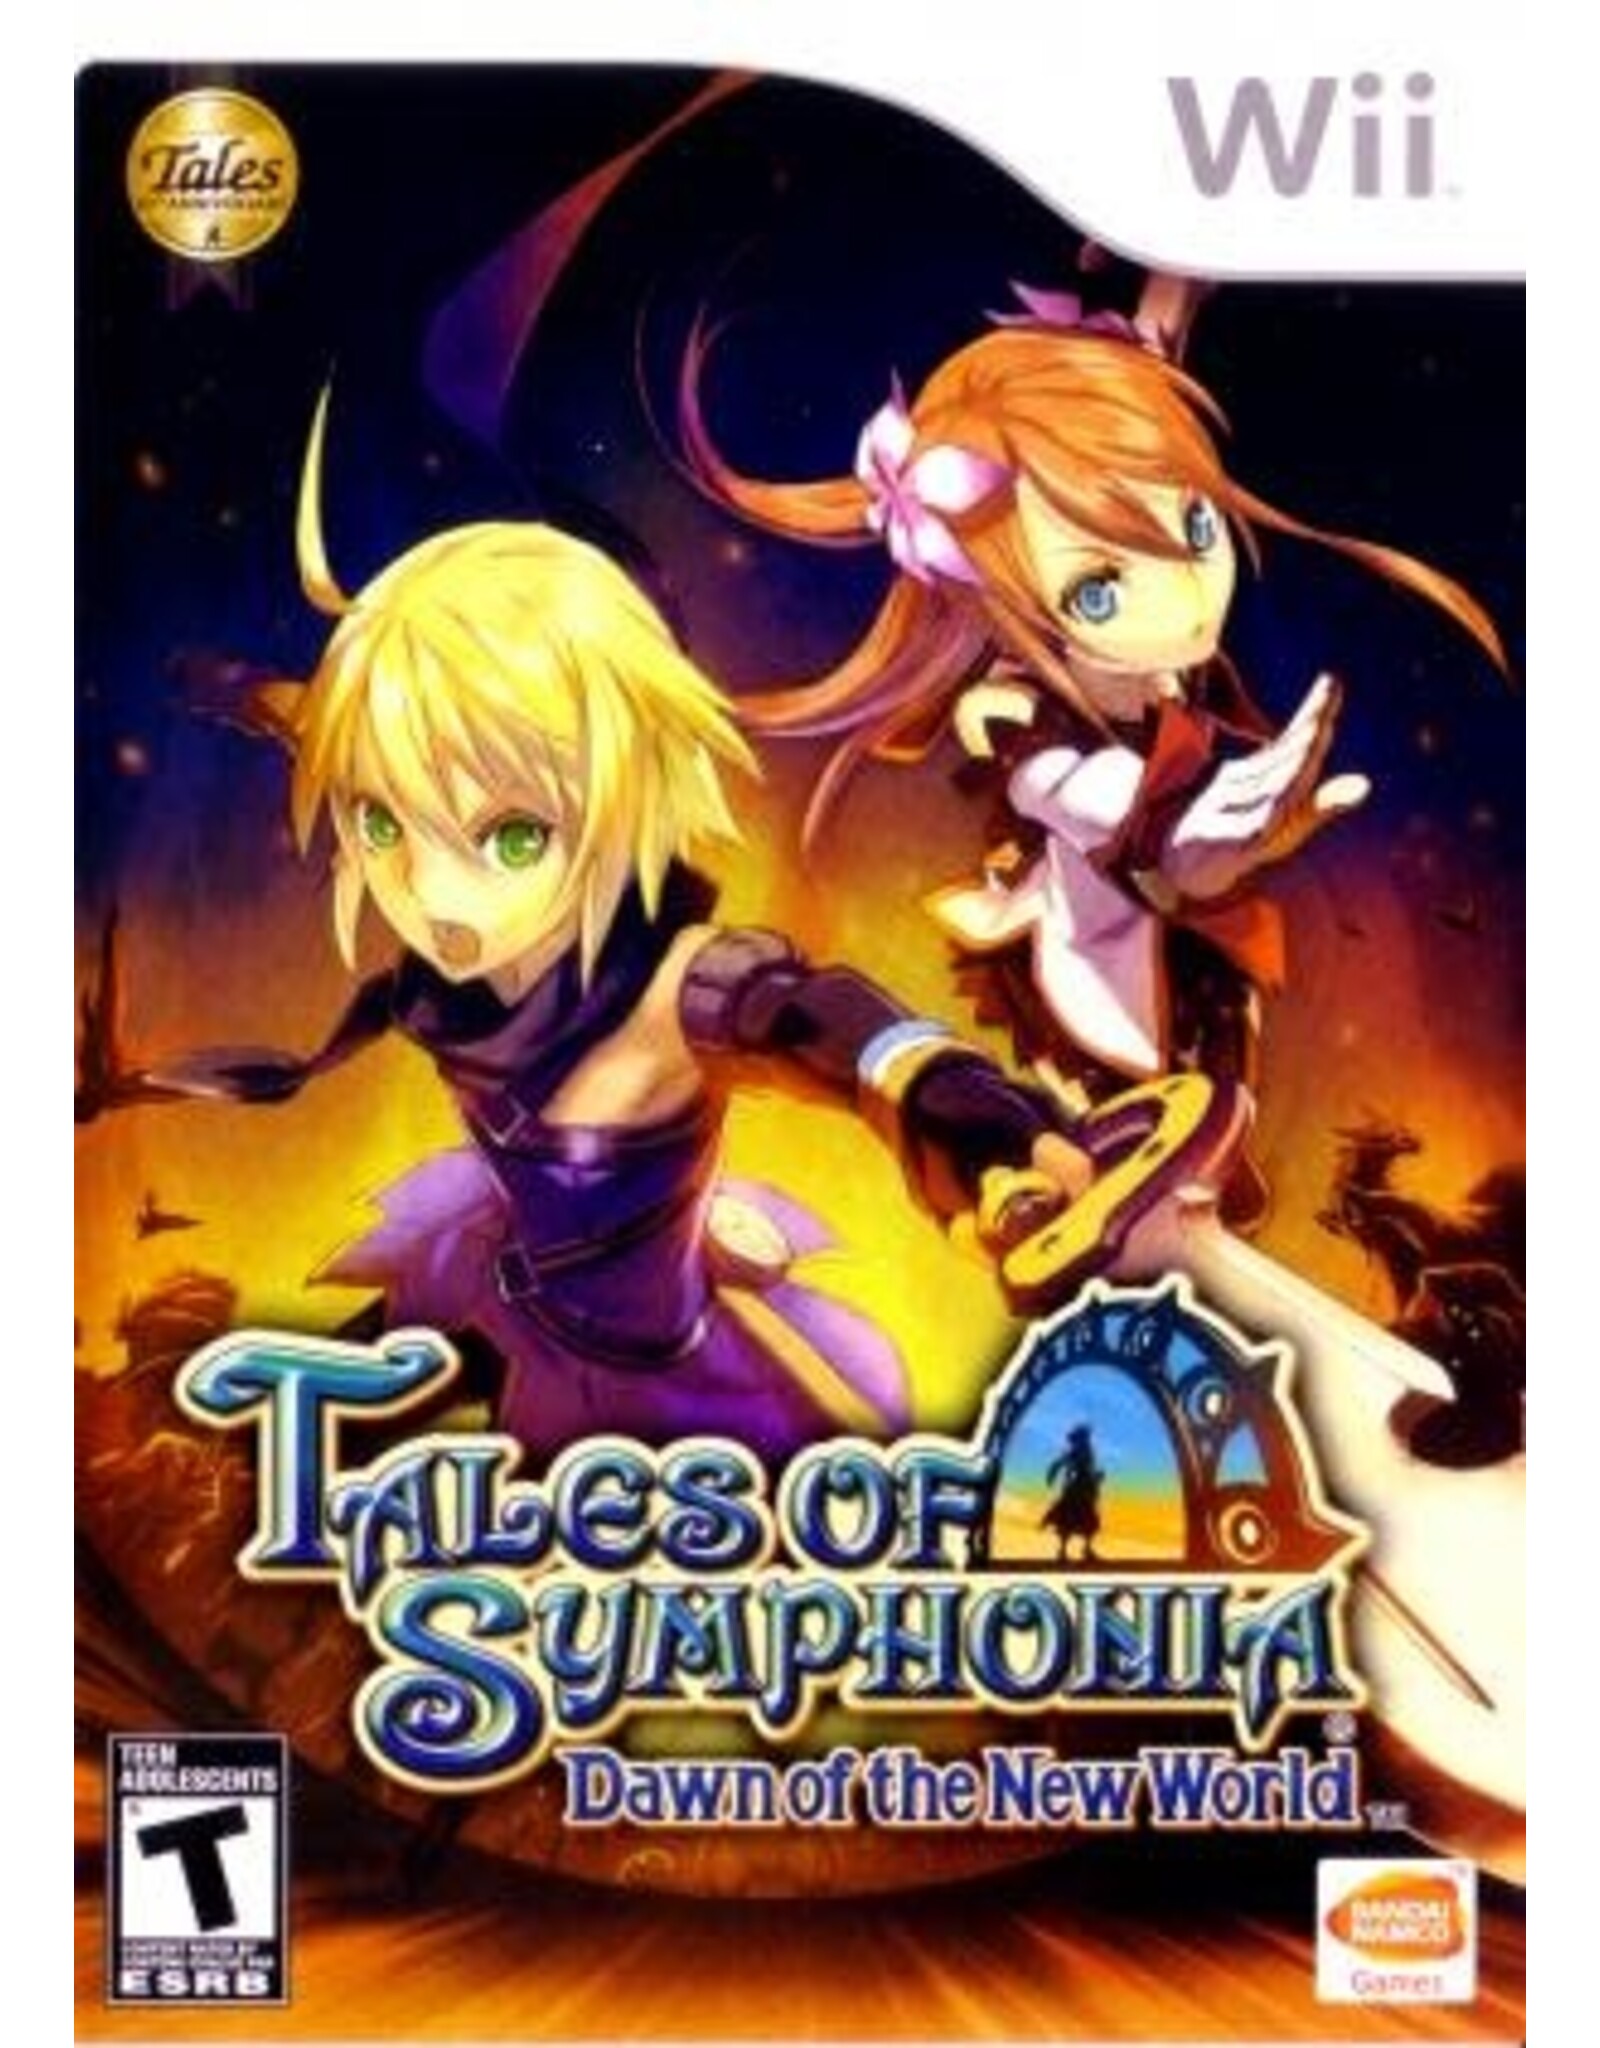 Wii Tales of Symphonia Dawn of the New World (CiB)